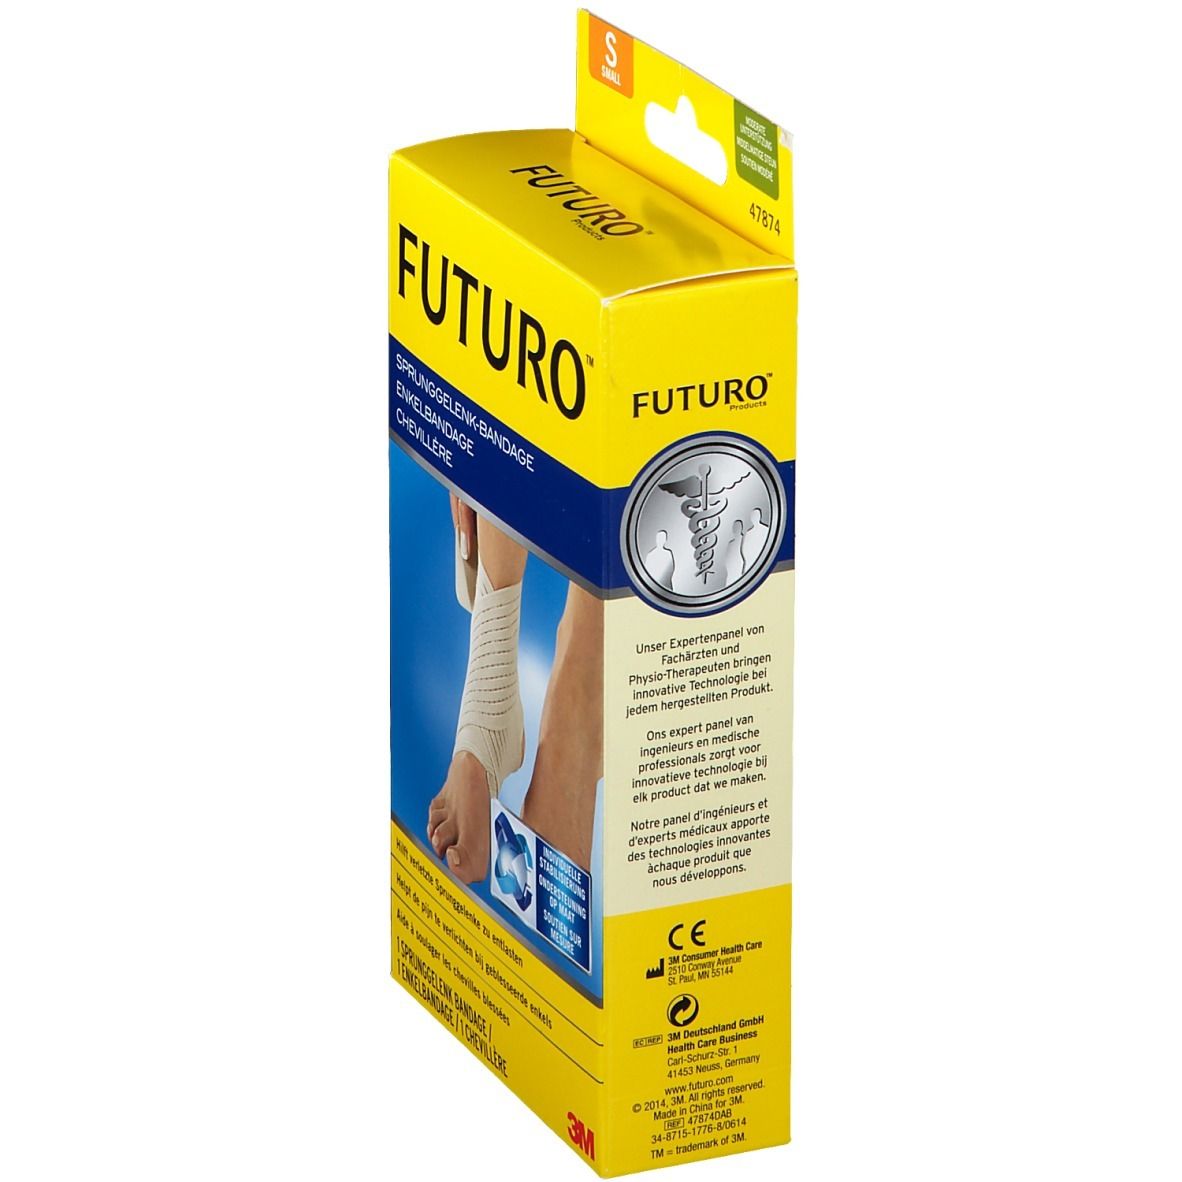 FUTURO™ Sprunggelenk-Bandage S